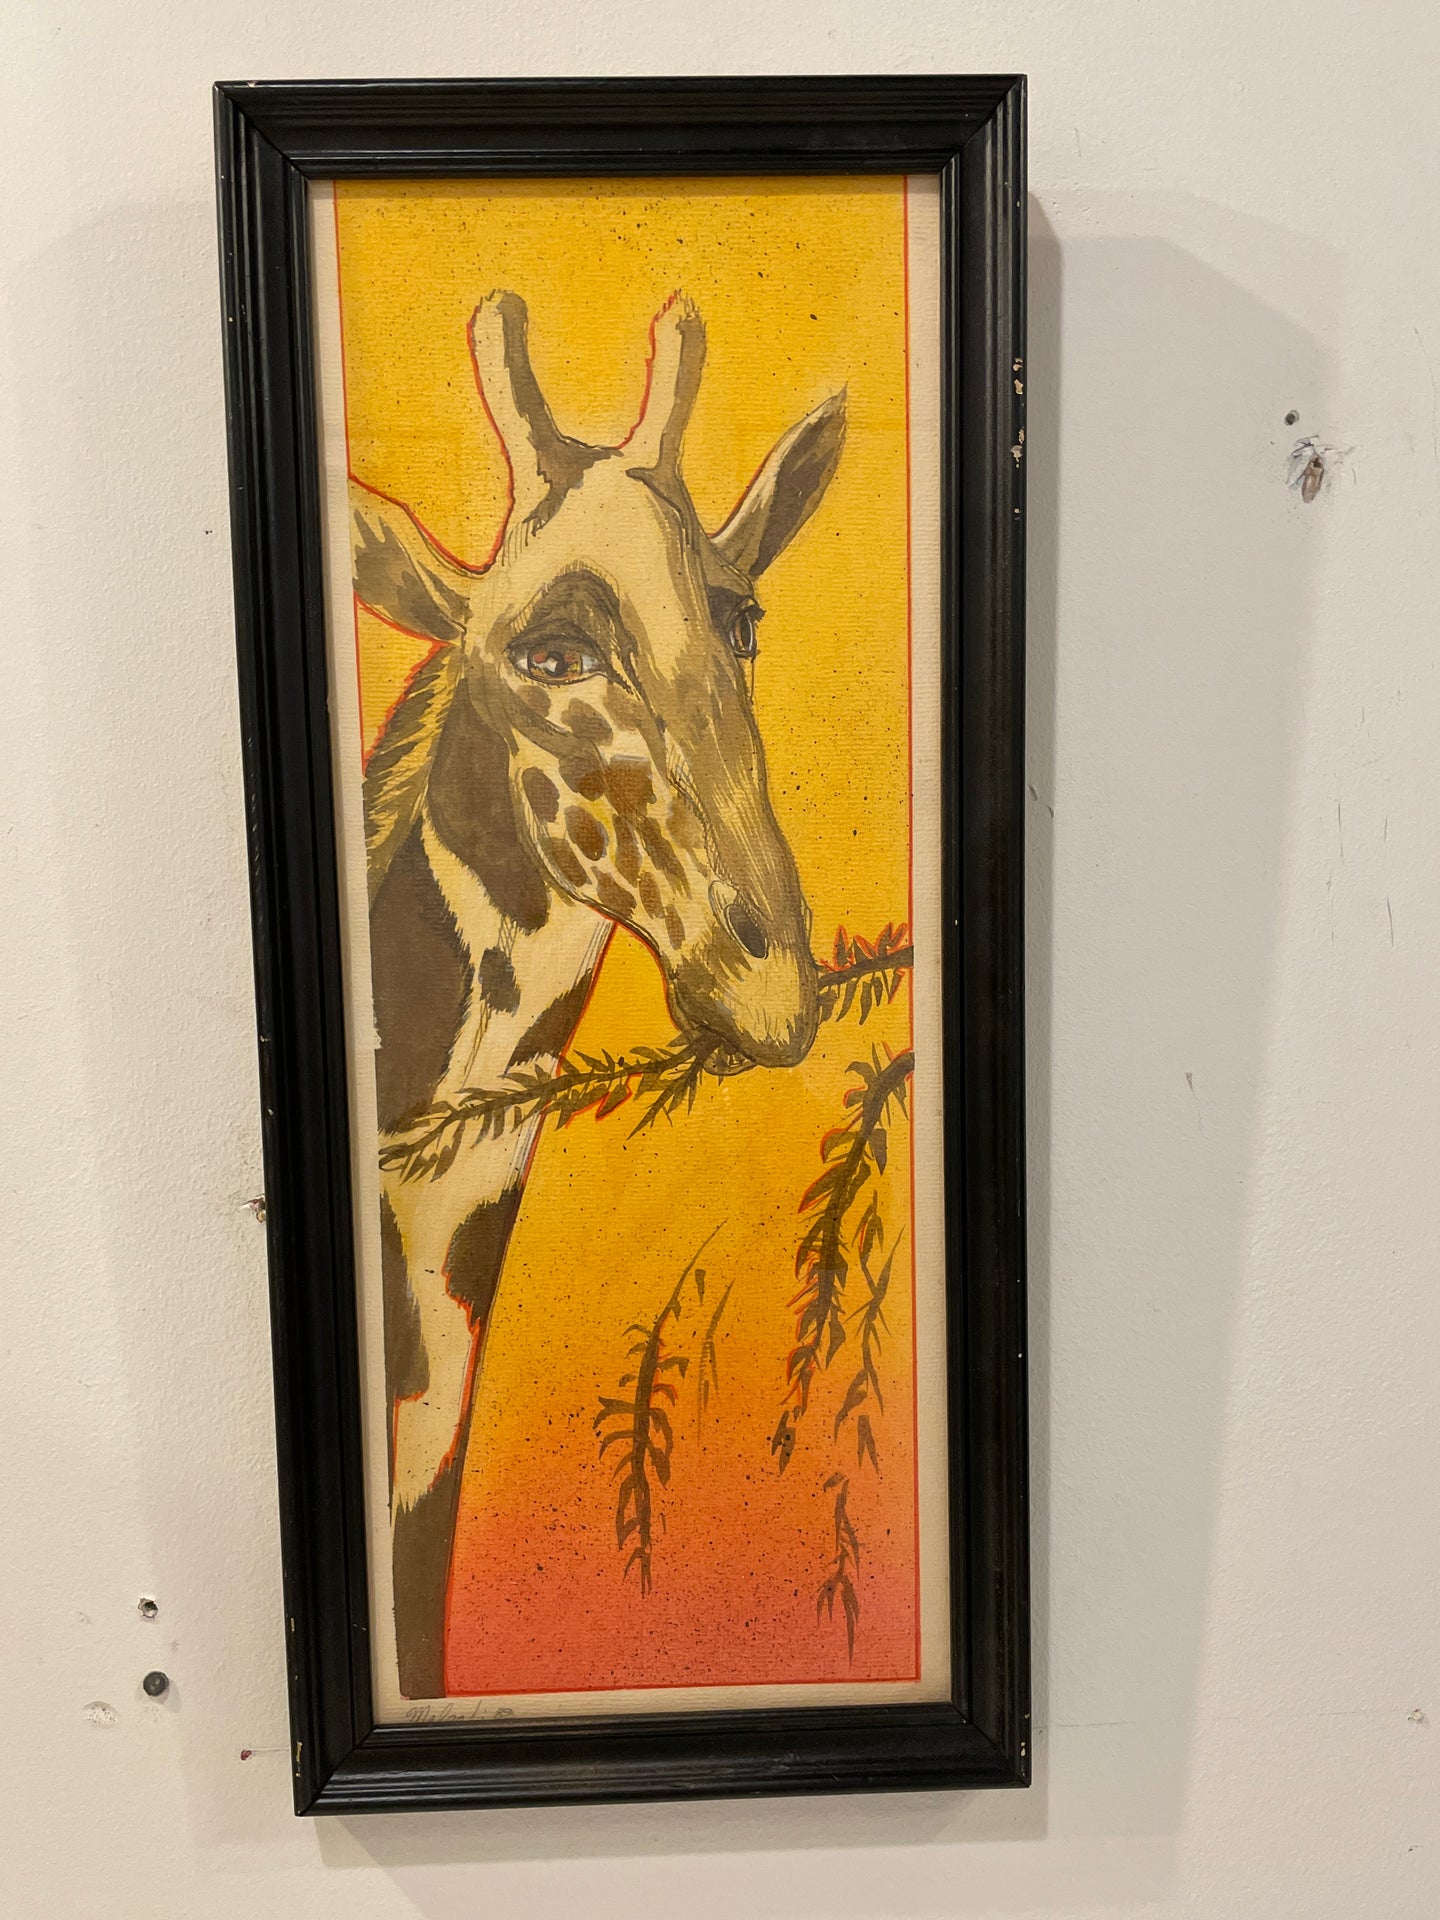 Framed Print of Giraffe, signed